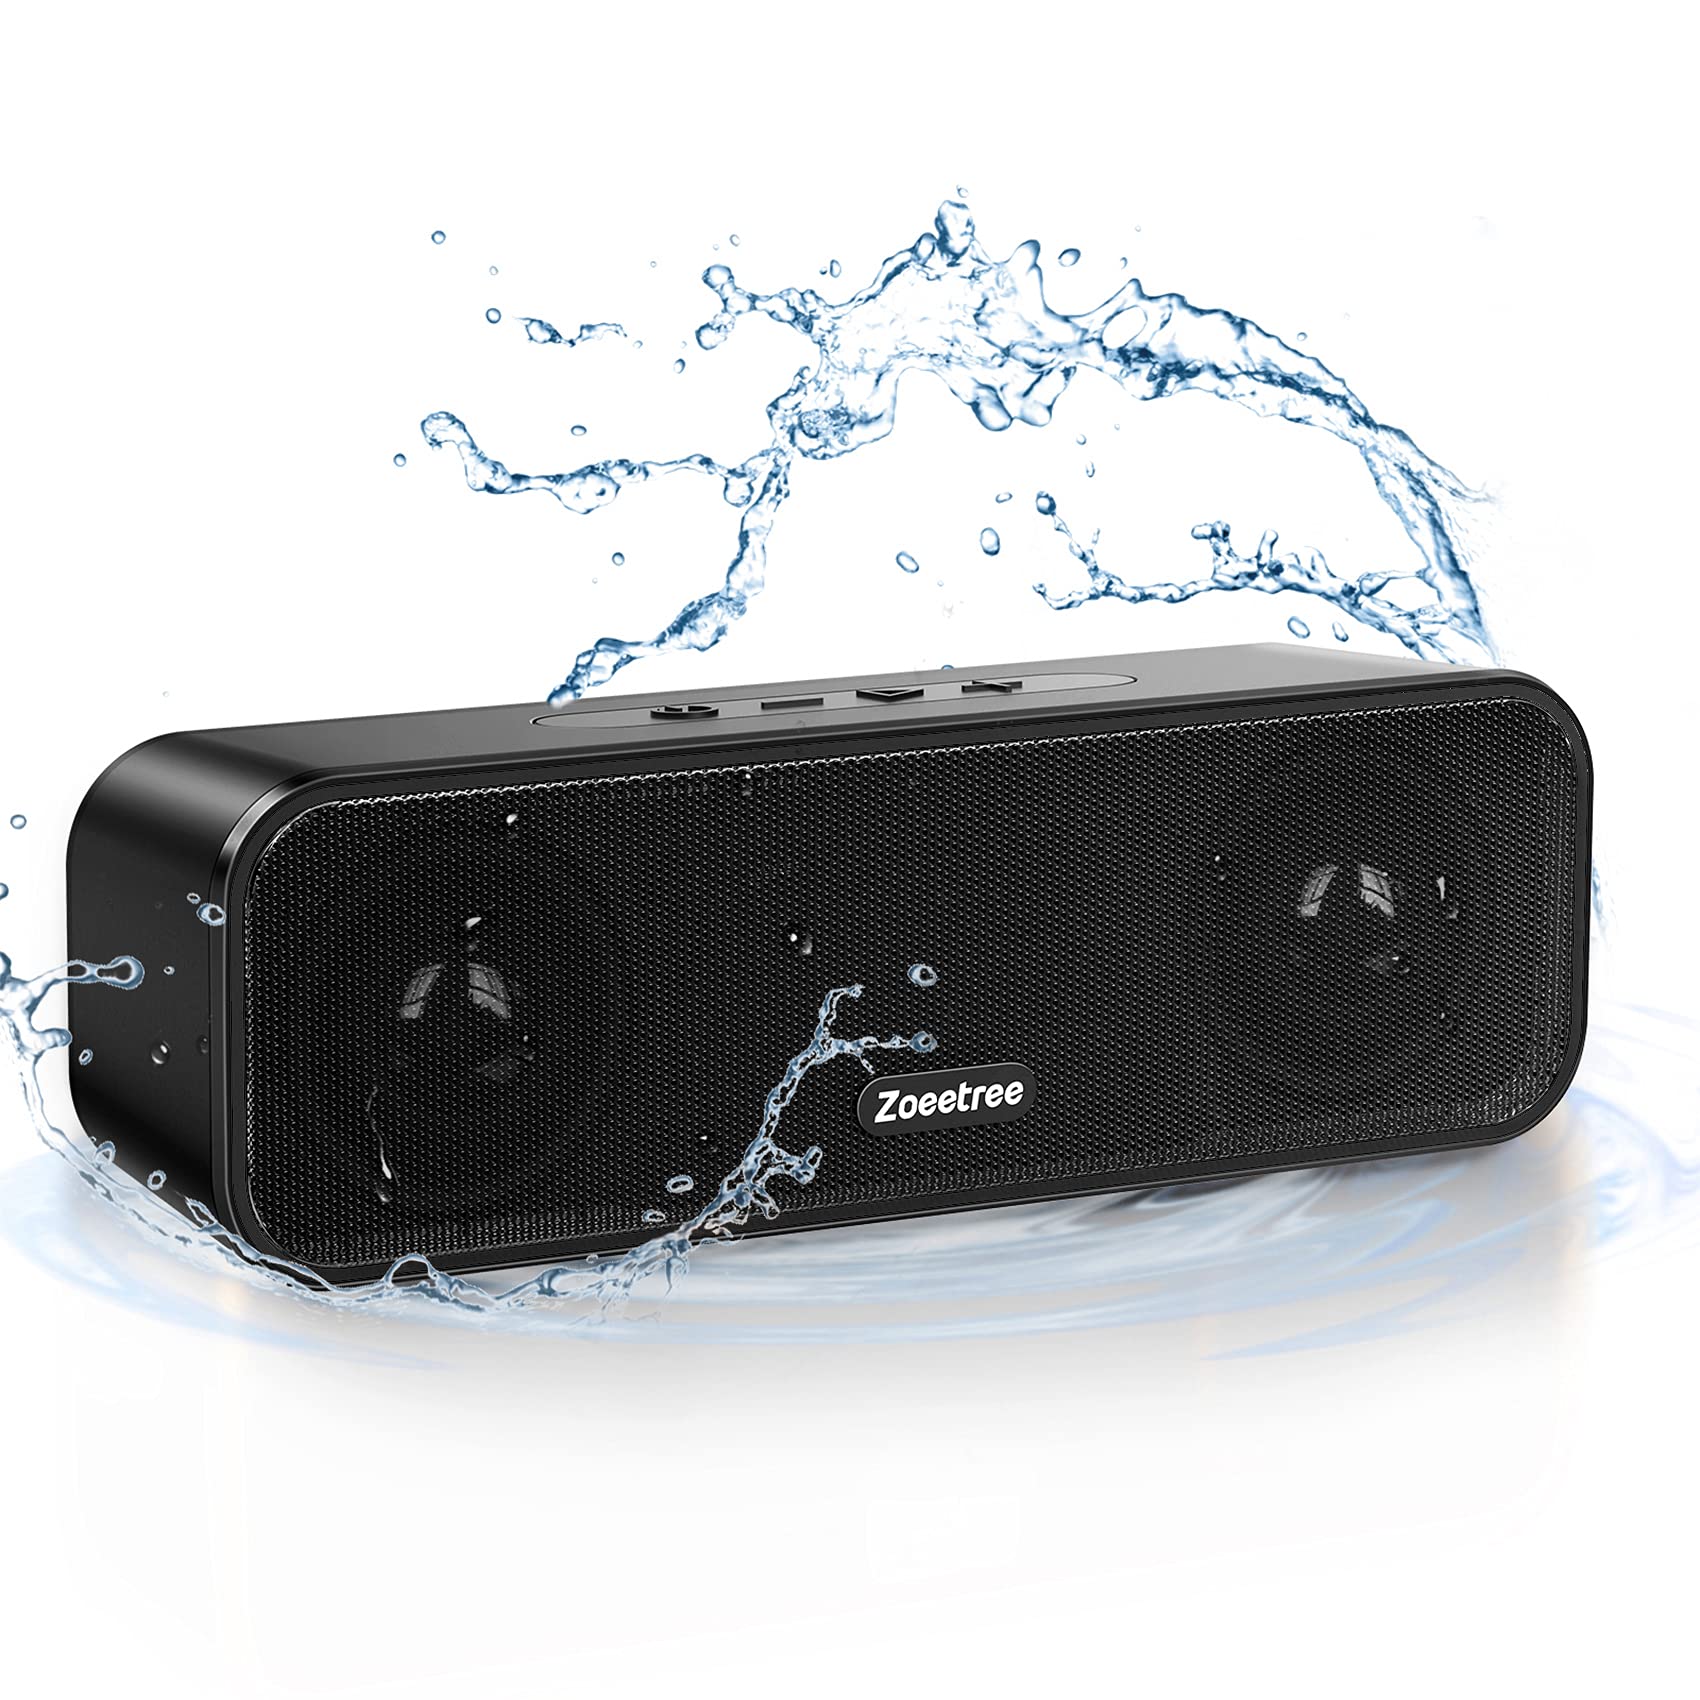 Bluetooth スピーカー ワイヤレススピーカー IPX7防水 ブルートゥーススピーカー 重低音 36時間連続再生 TWS対応 ポータブル Bluetooth5.